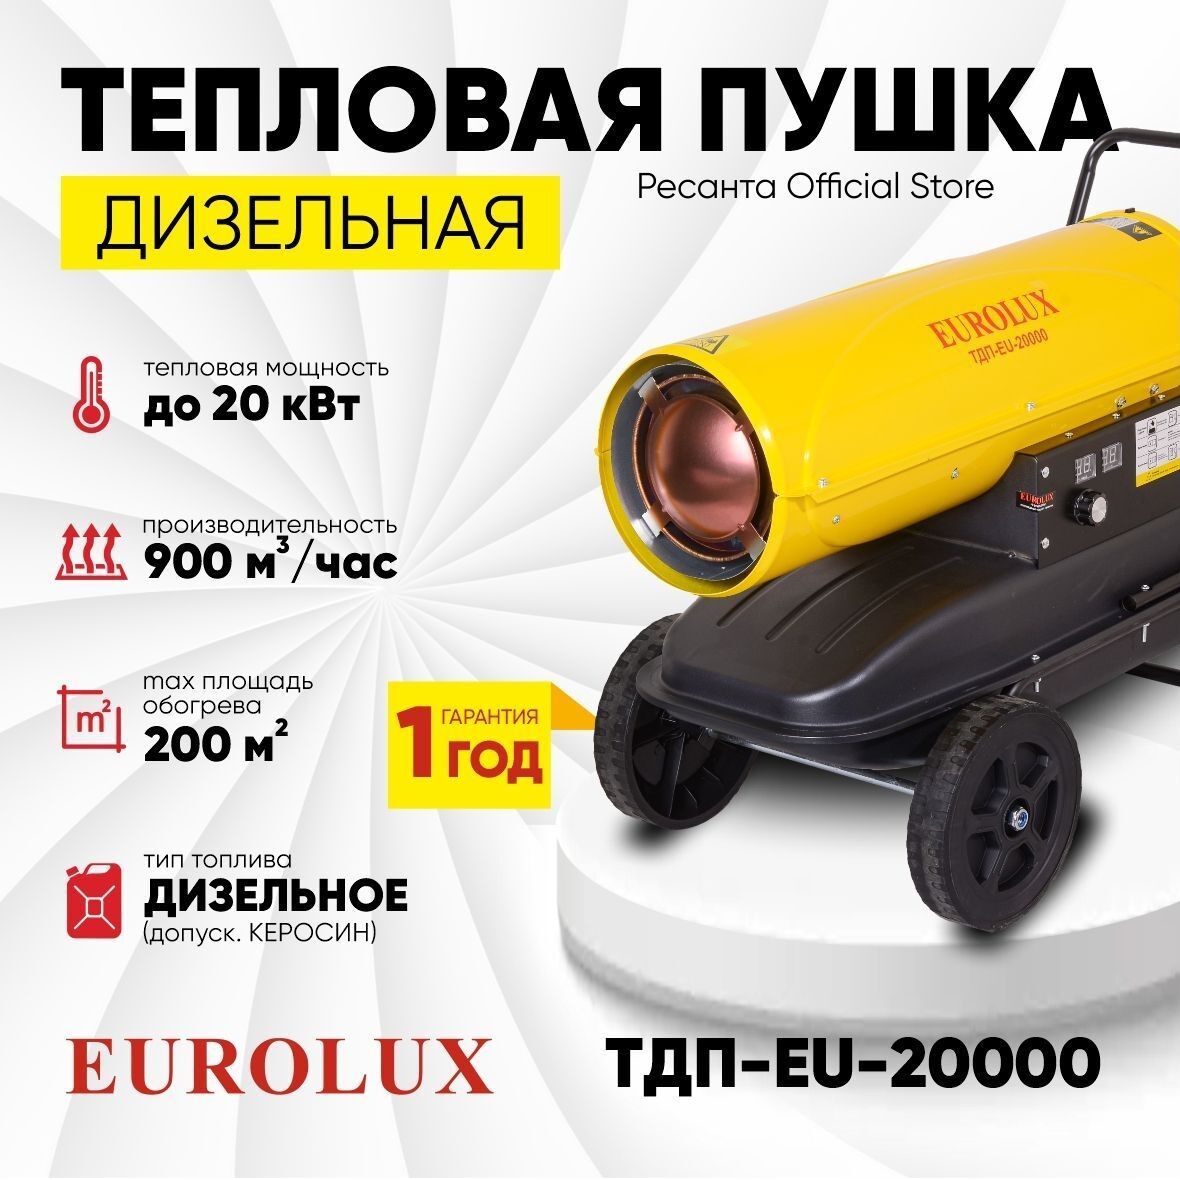 Тепловая дизельная пушка Eurolux ТДП-EU-20000